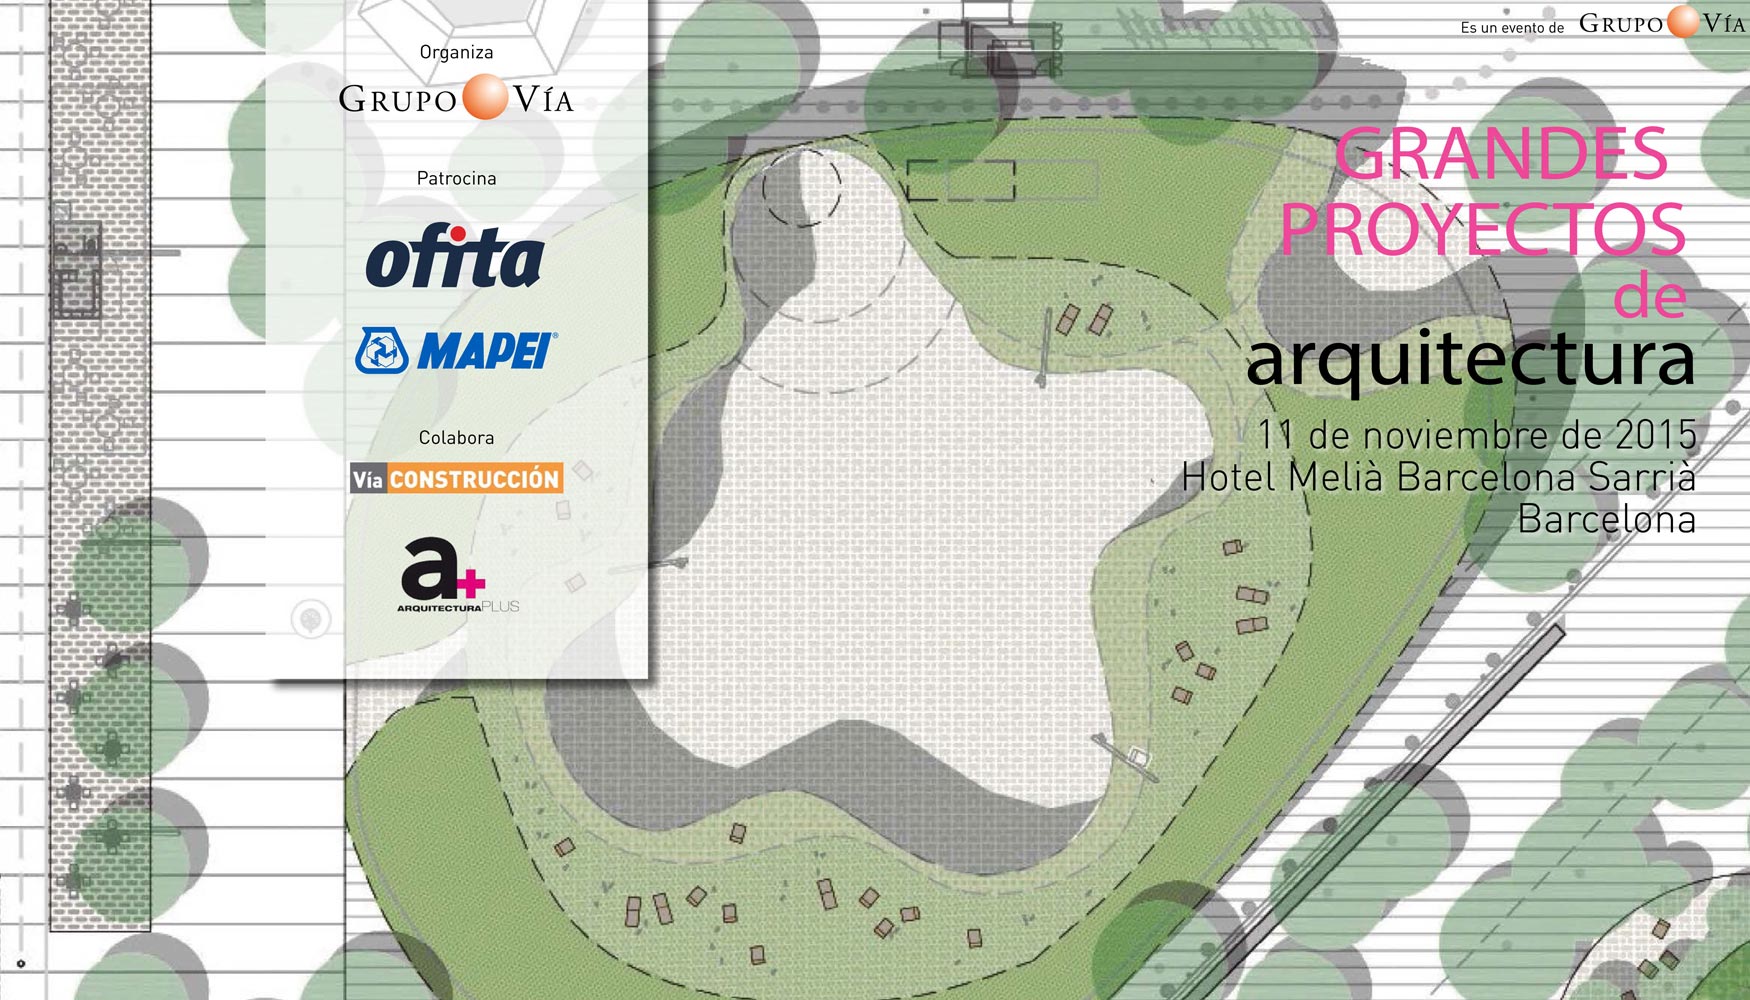 Cartel de la jornada Grandes proyectos de Arquitectura de Mapei